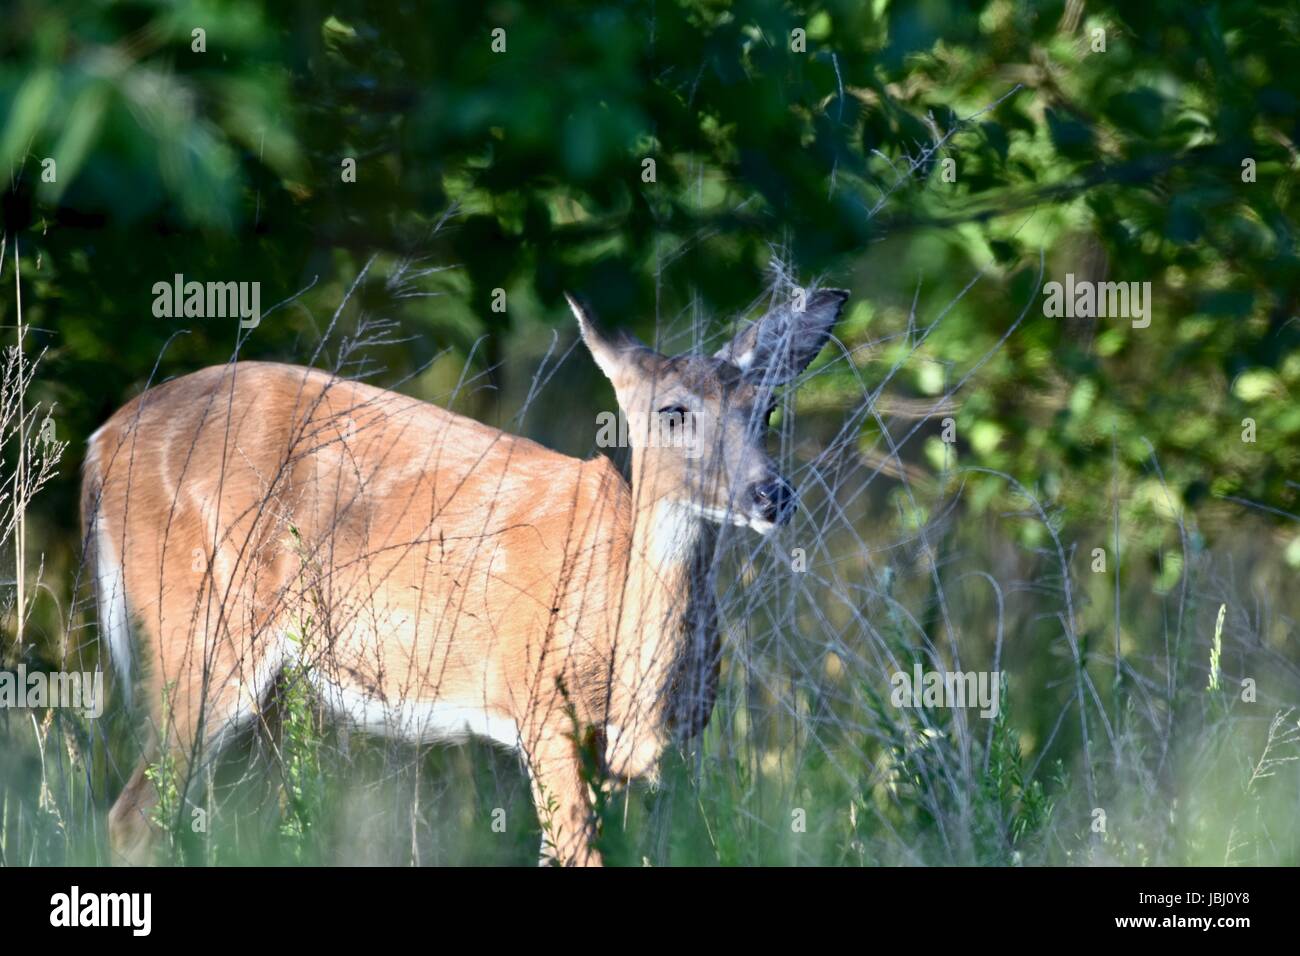 White-tailed deer (Odocoileus virginianus) Stock Photo